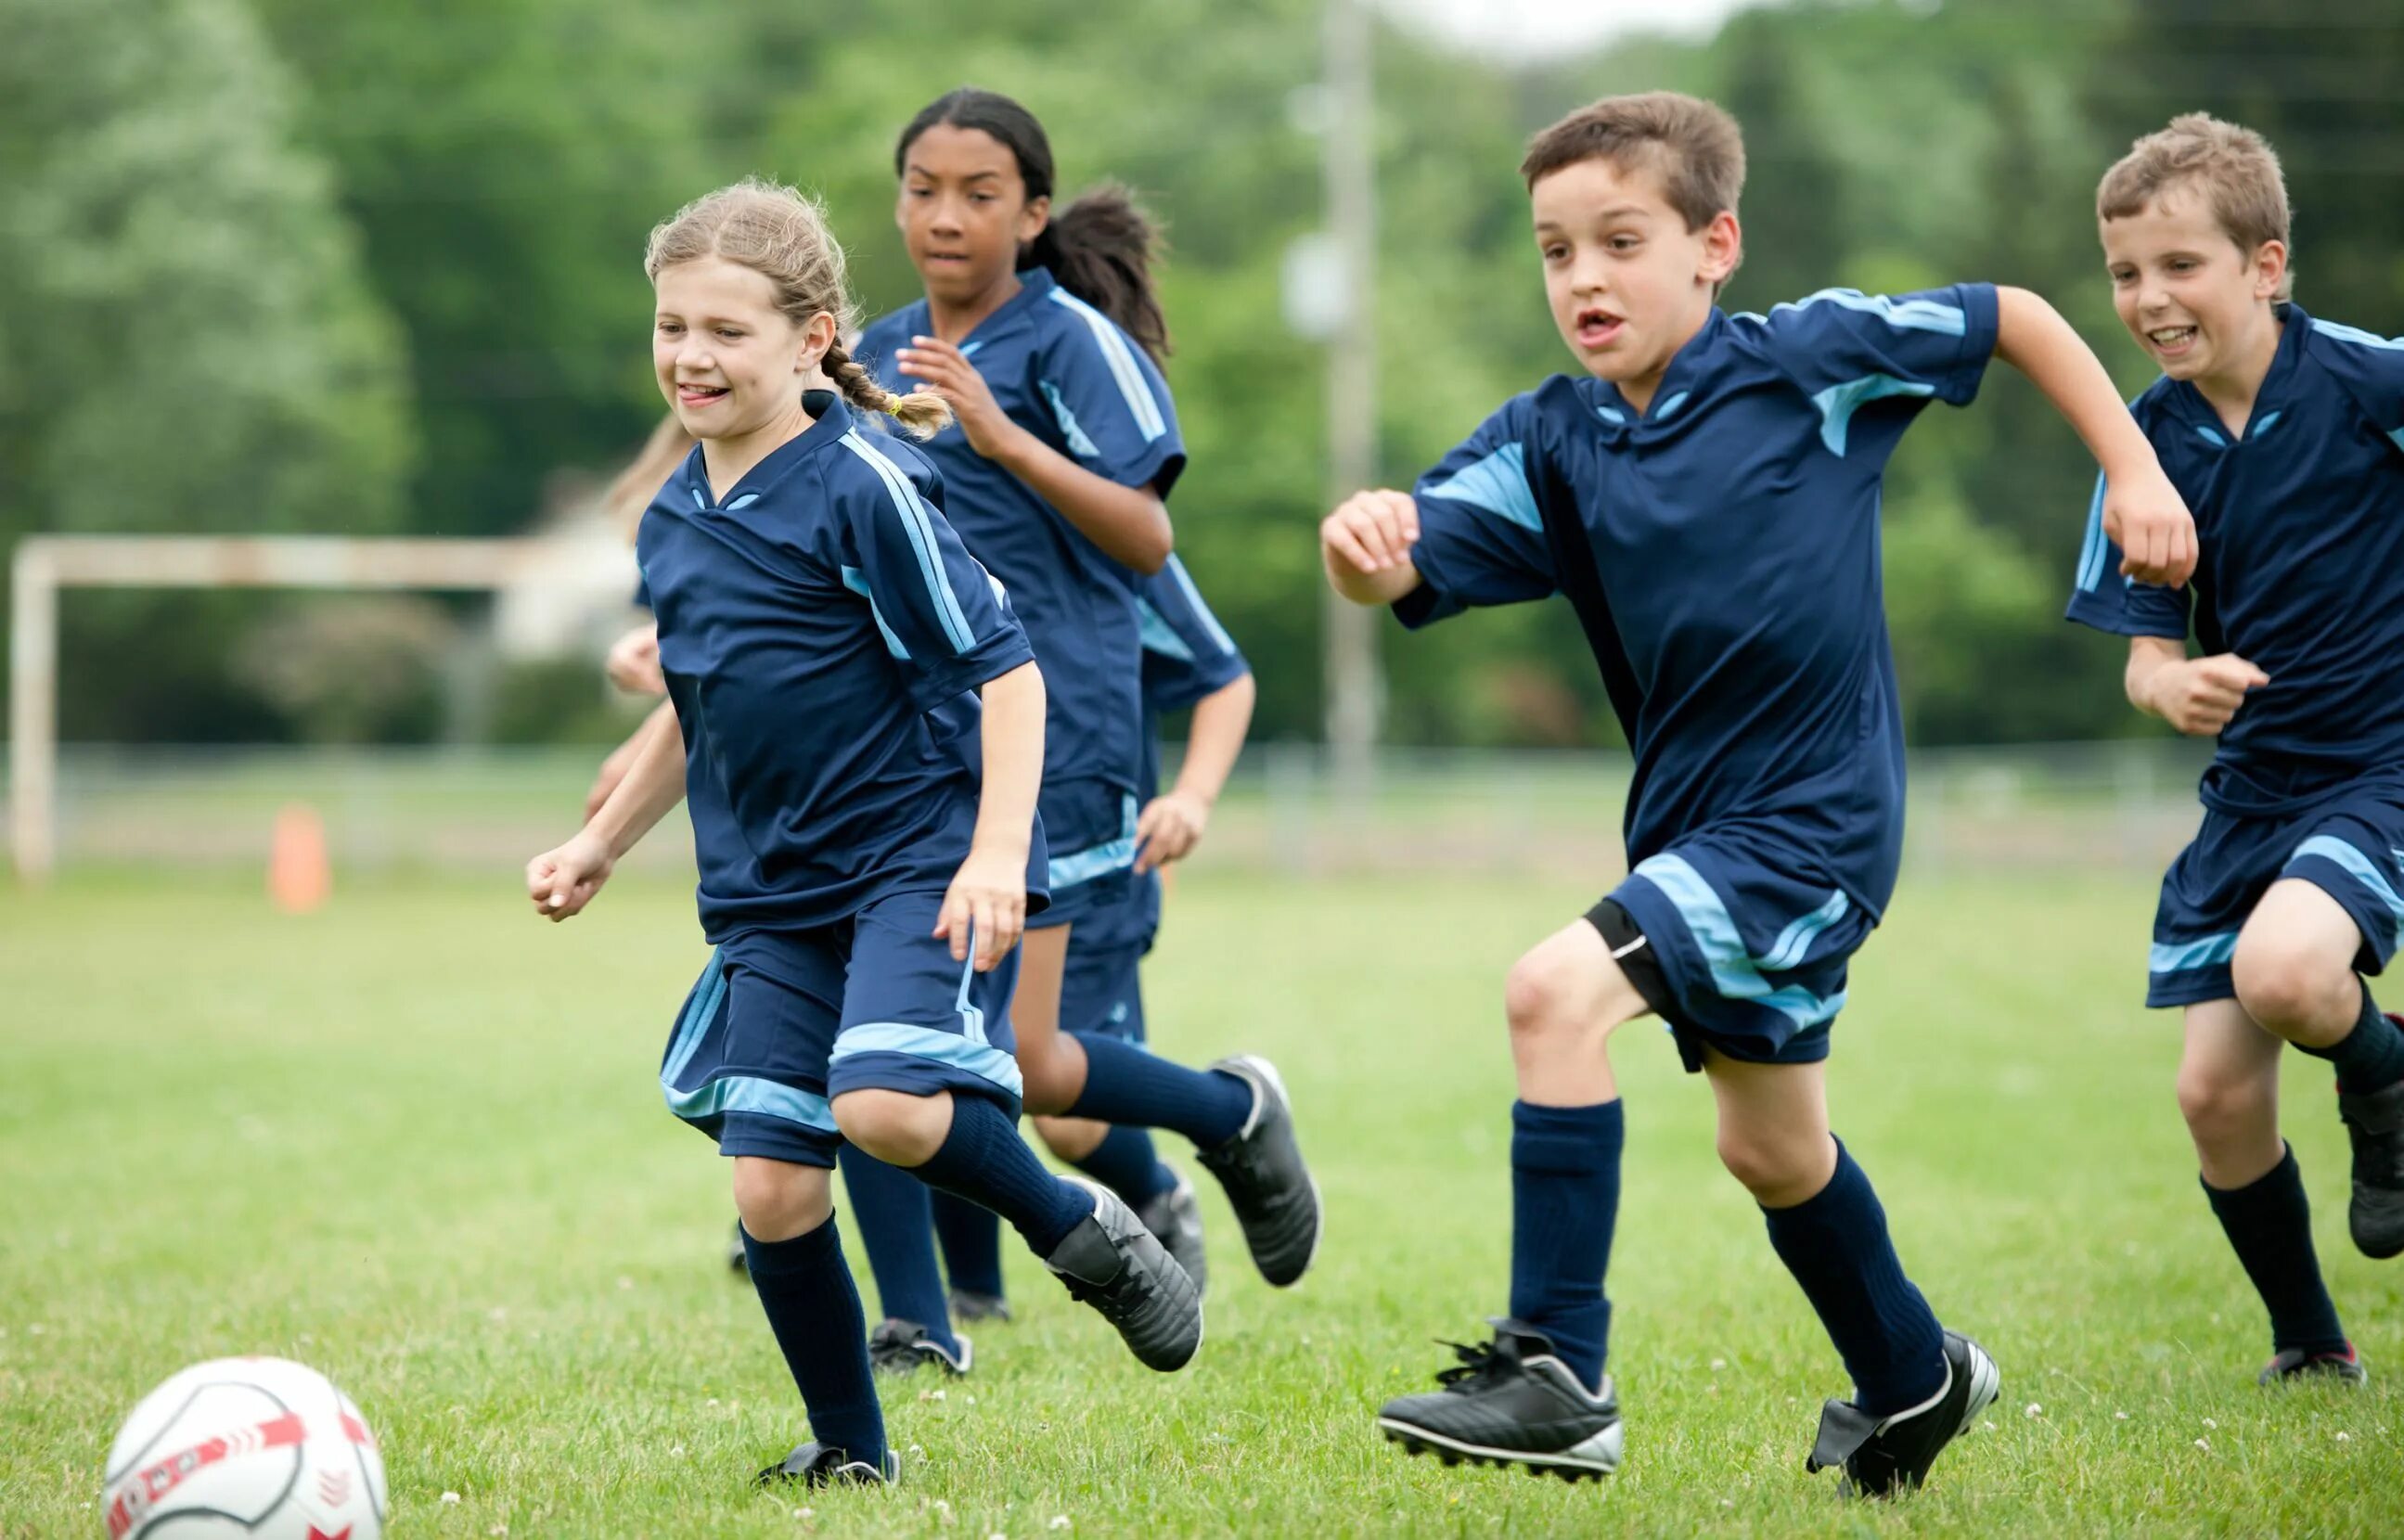 Футбол дети. Дети играющие в футбол. Спорт футбол дети. Футбол для школьников. Там играют в футбол